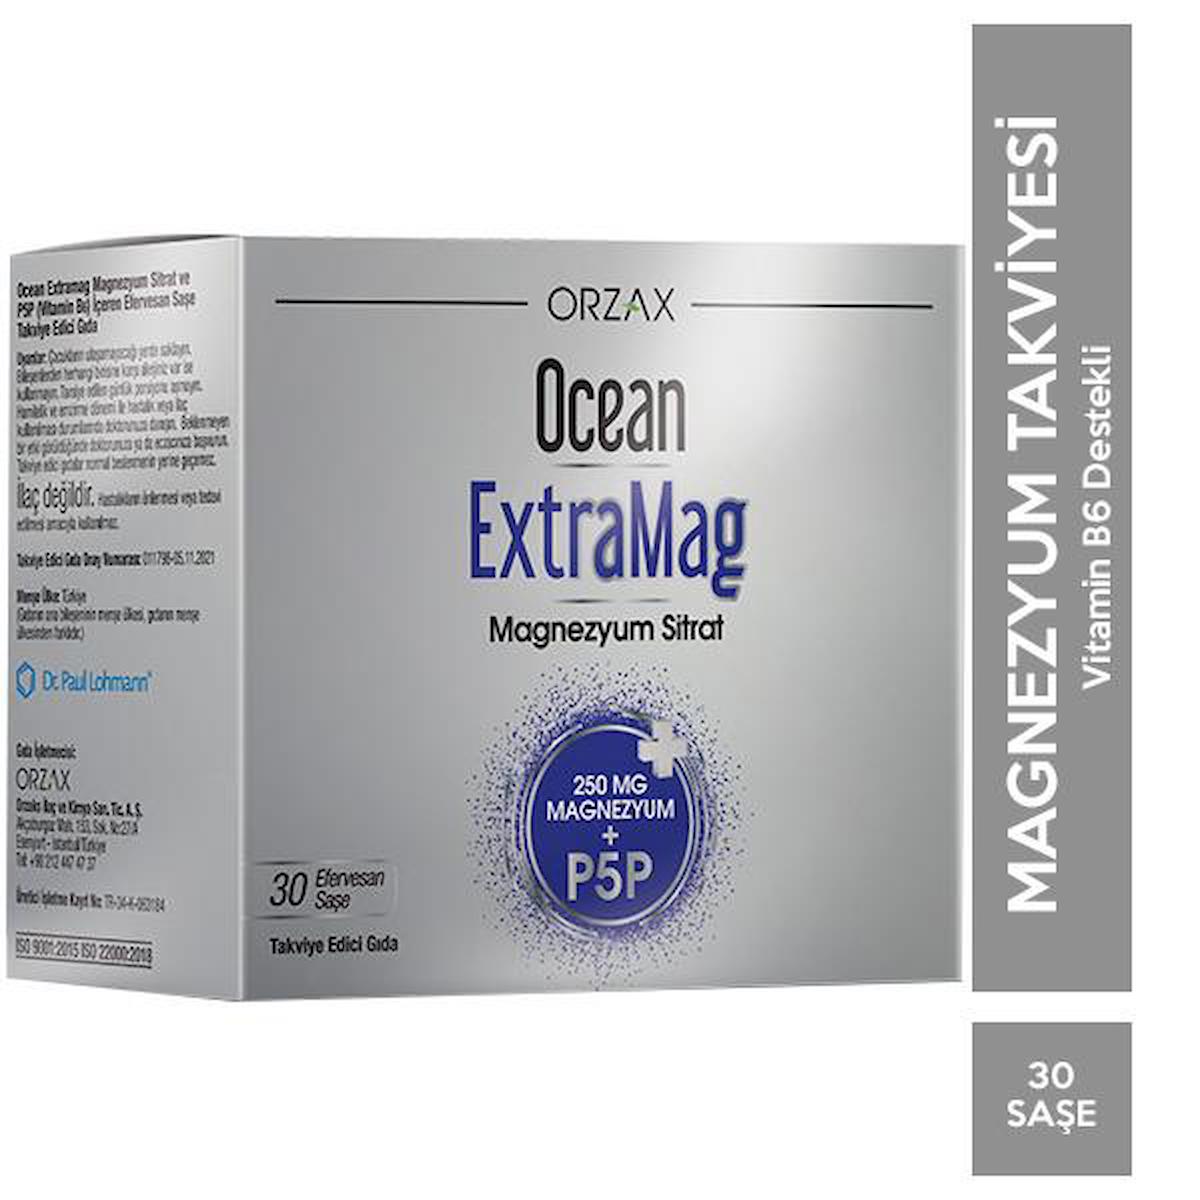 Ocean Orzax Magnezyum Aromasız Unisex Vitamin 30 Şase